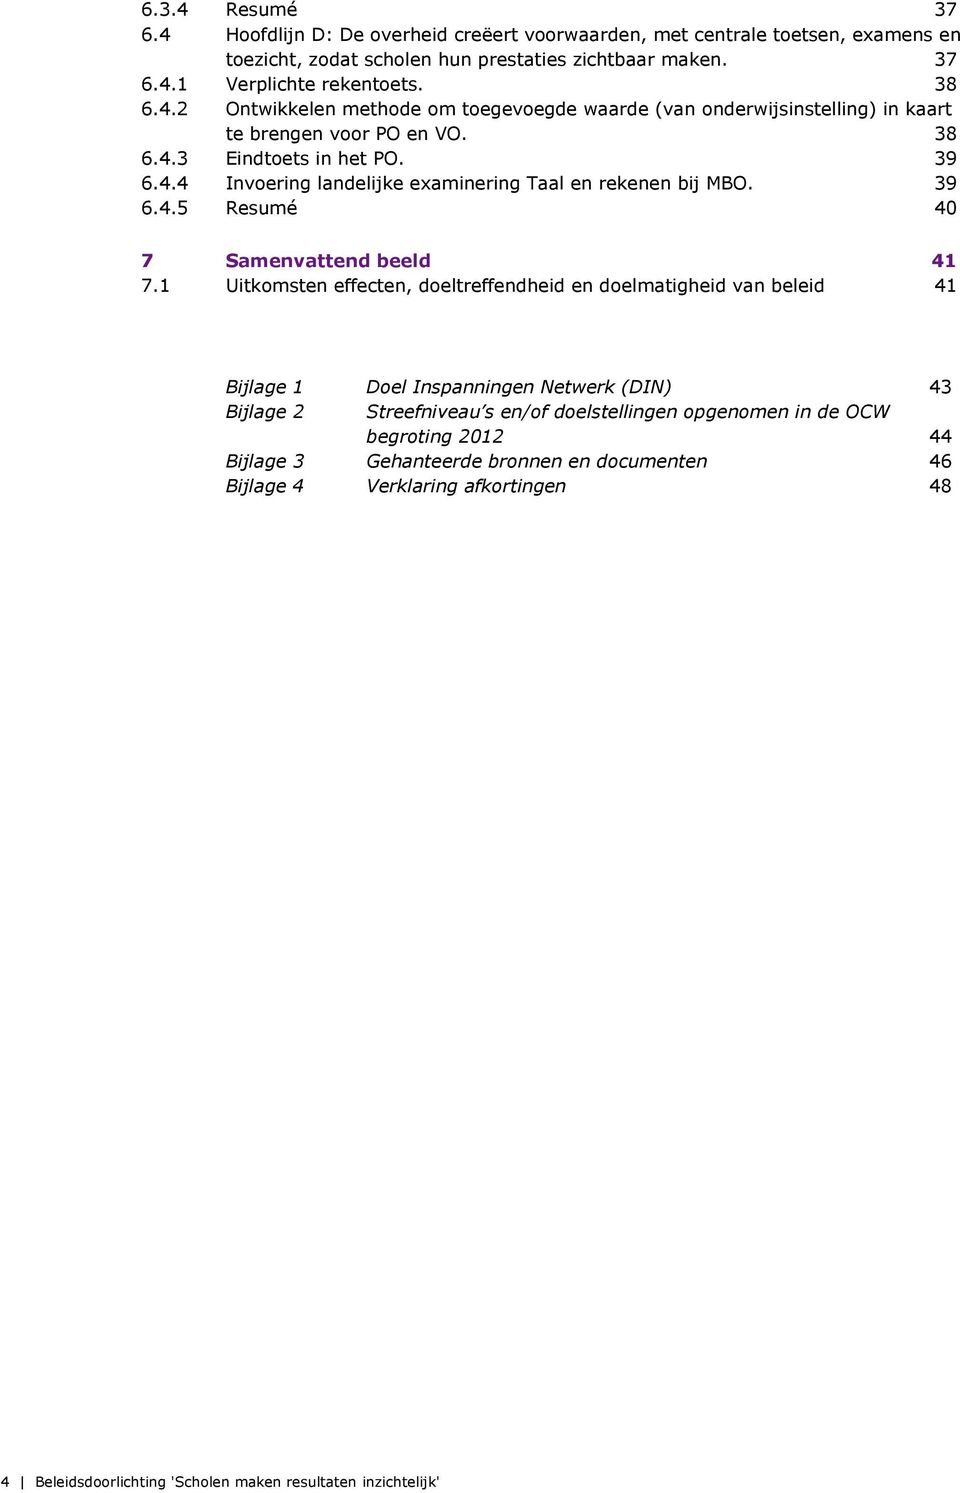 1 Uitkomsten effecten, doeltreffendheid en doelmatigheid van beleid 41 Bijlage 1 Doel Inspanningen Netwerk (DIN) 43 Bijlage 2 Streefniveau s en/of doelstellingen opgenomen in de OCW begroting 2012